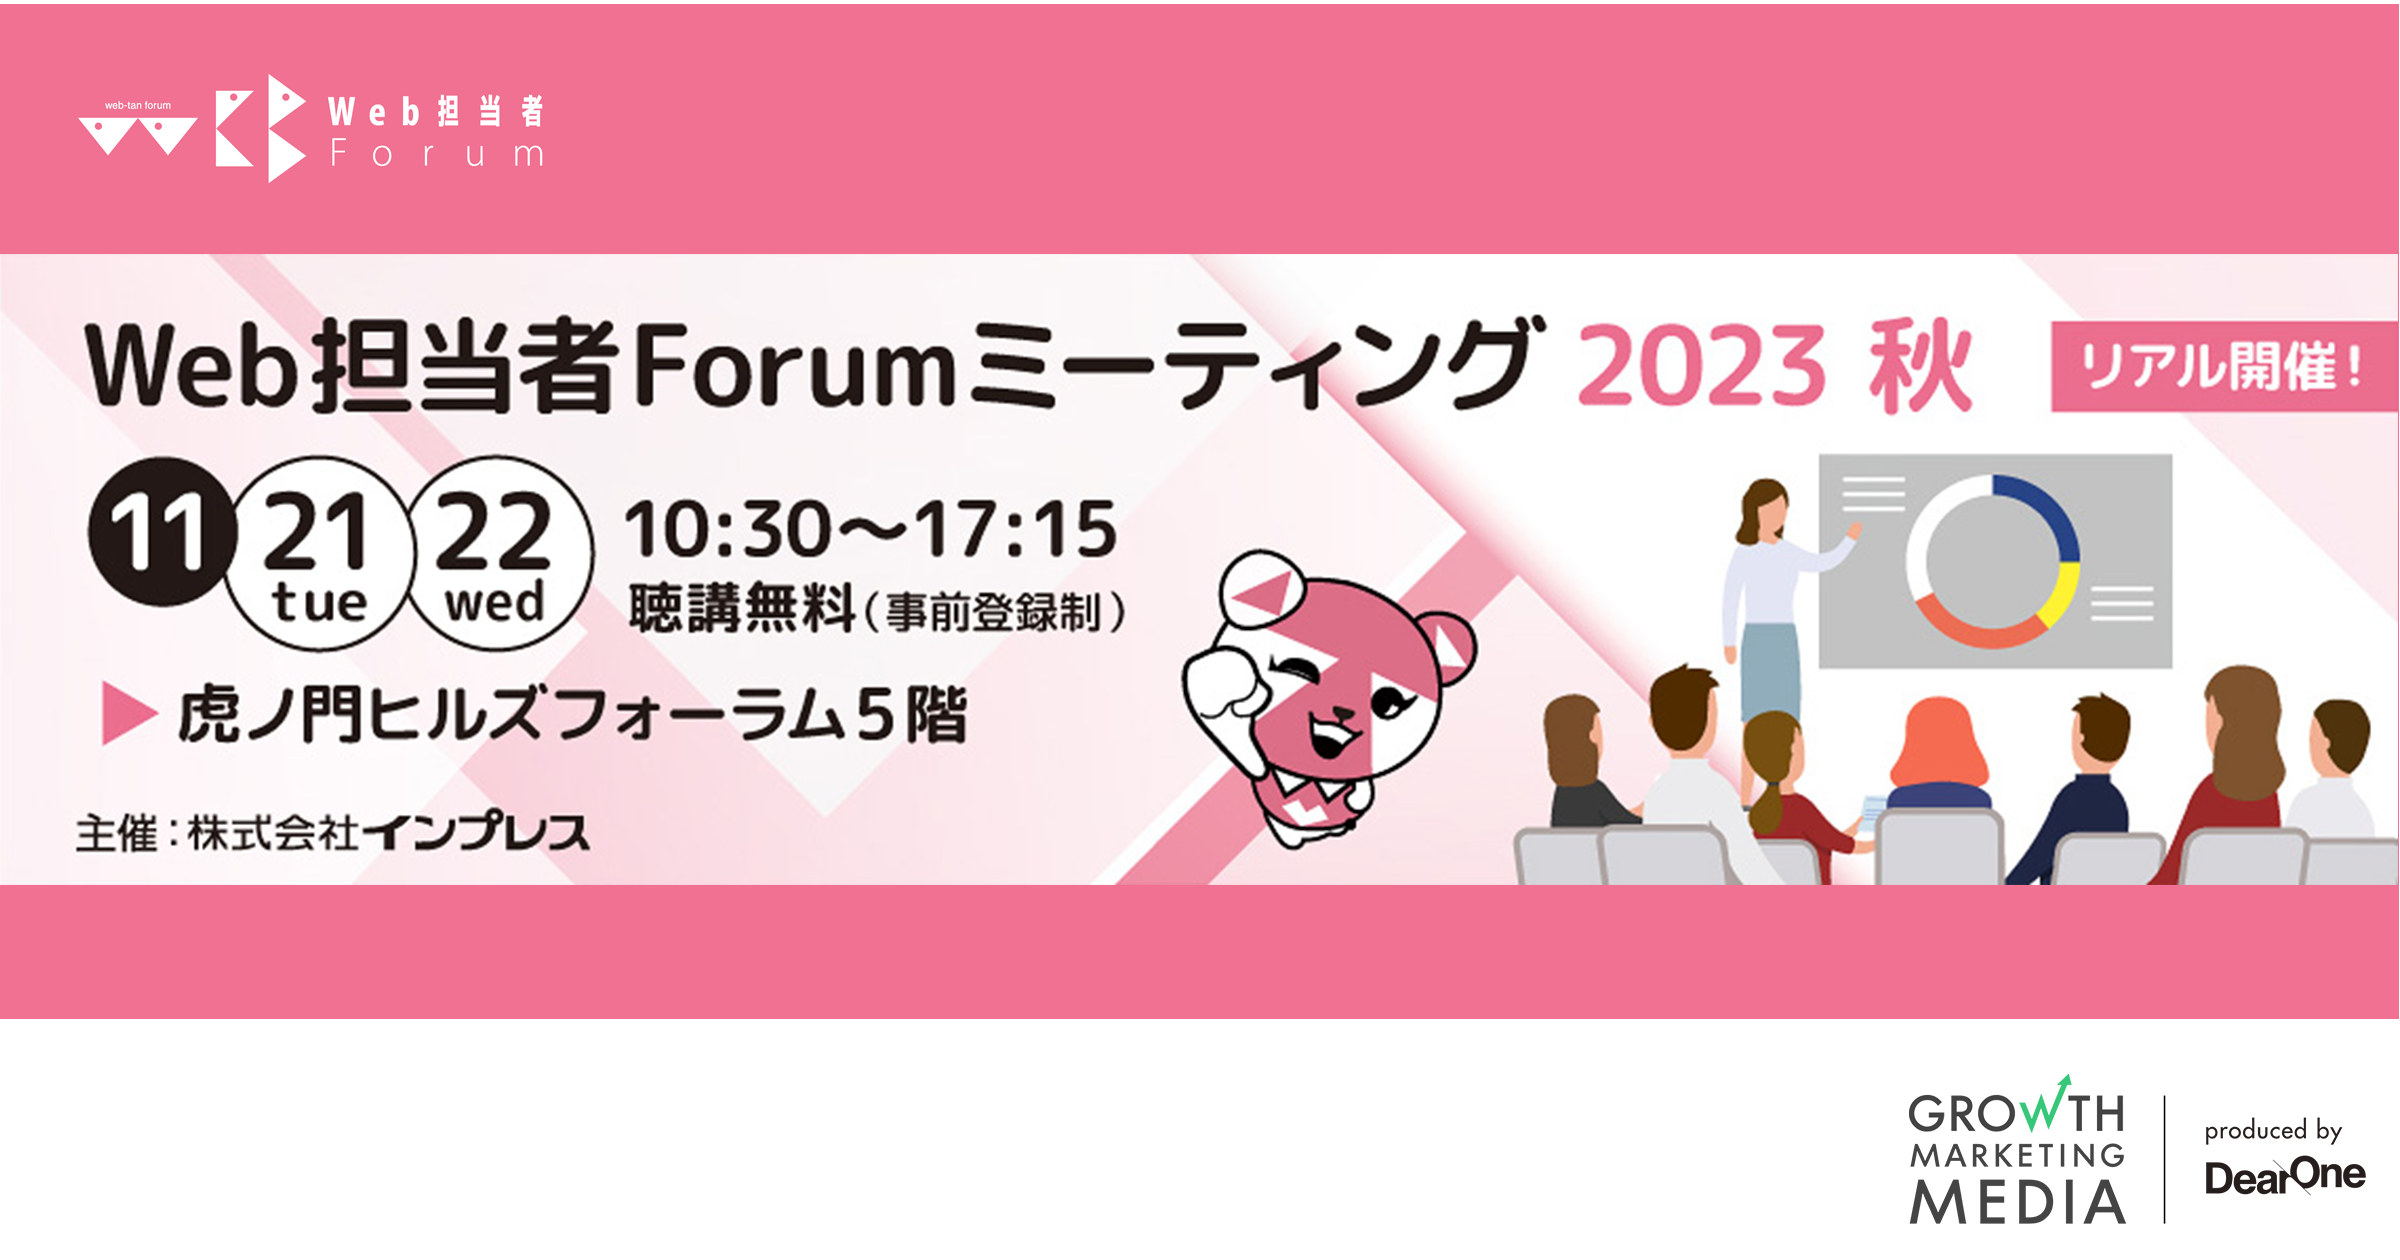 『Web担当者Forum ミーティング2023 秋』開催のお知らせ